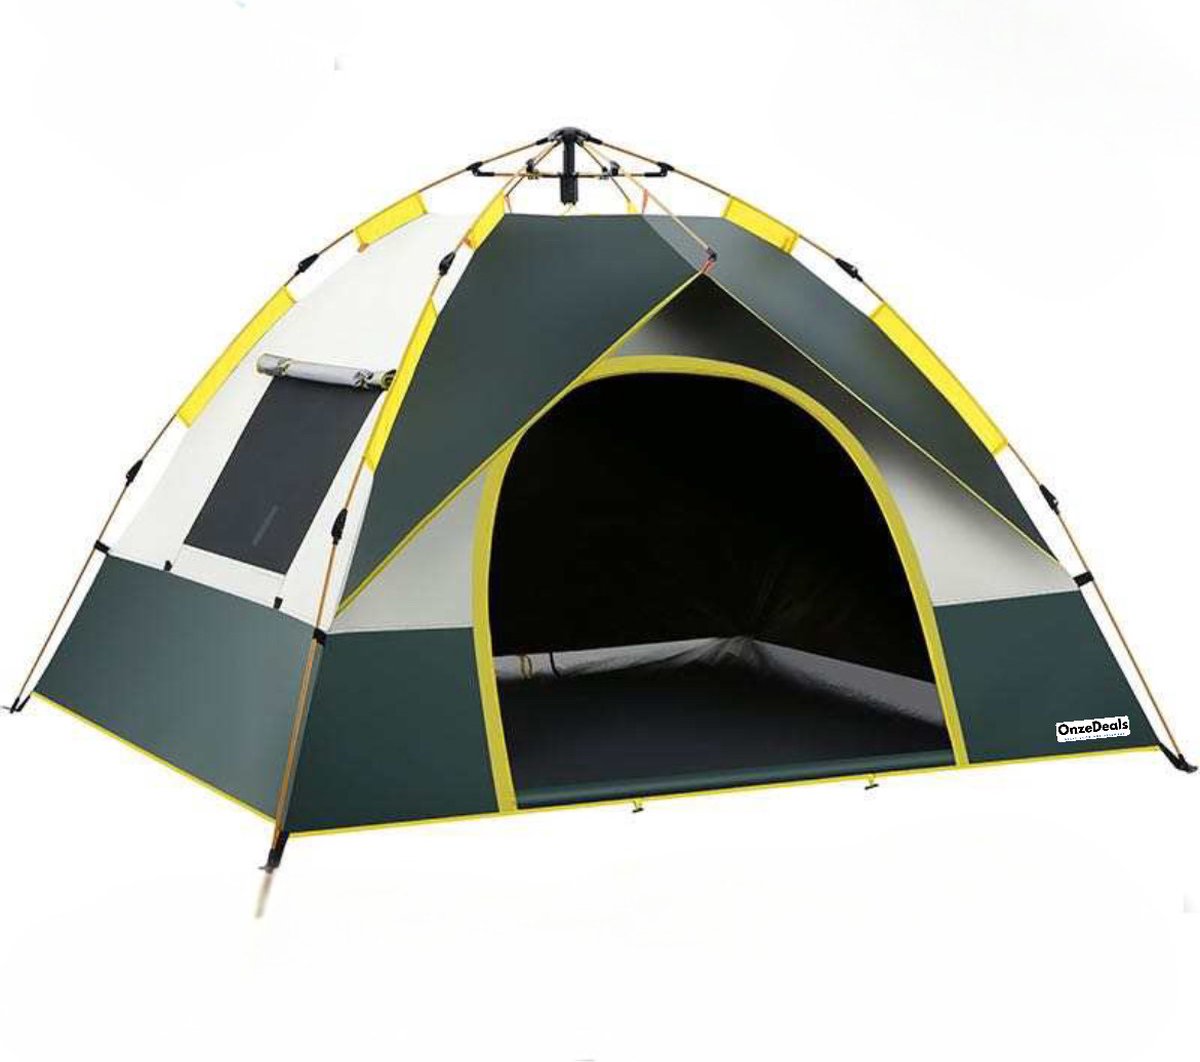 Camping Tent voor 3 personen | Pop Up Tent | Automatische tent snel opzetten voor festival, camping en picknicken - tent opzetbaar in 60 seconden